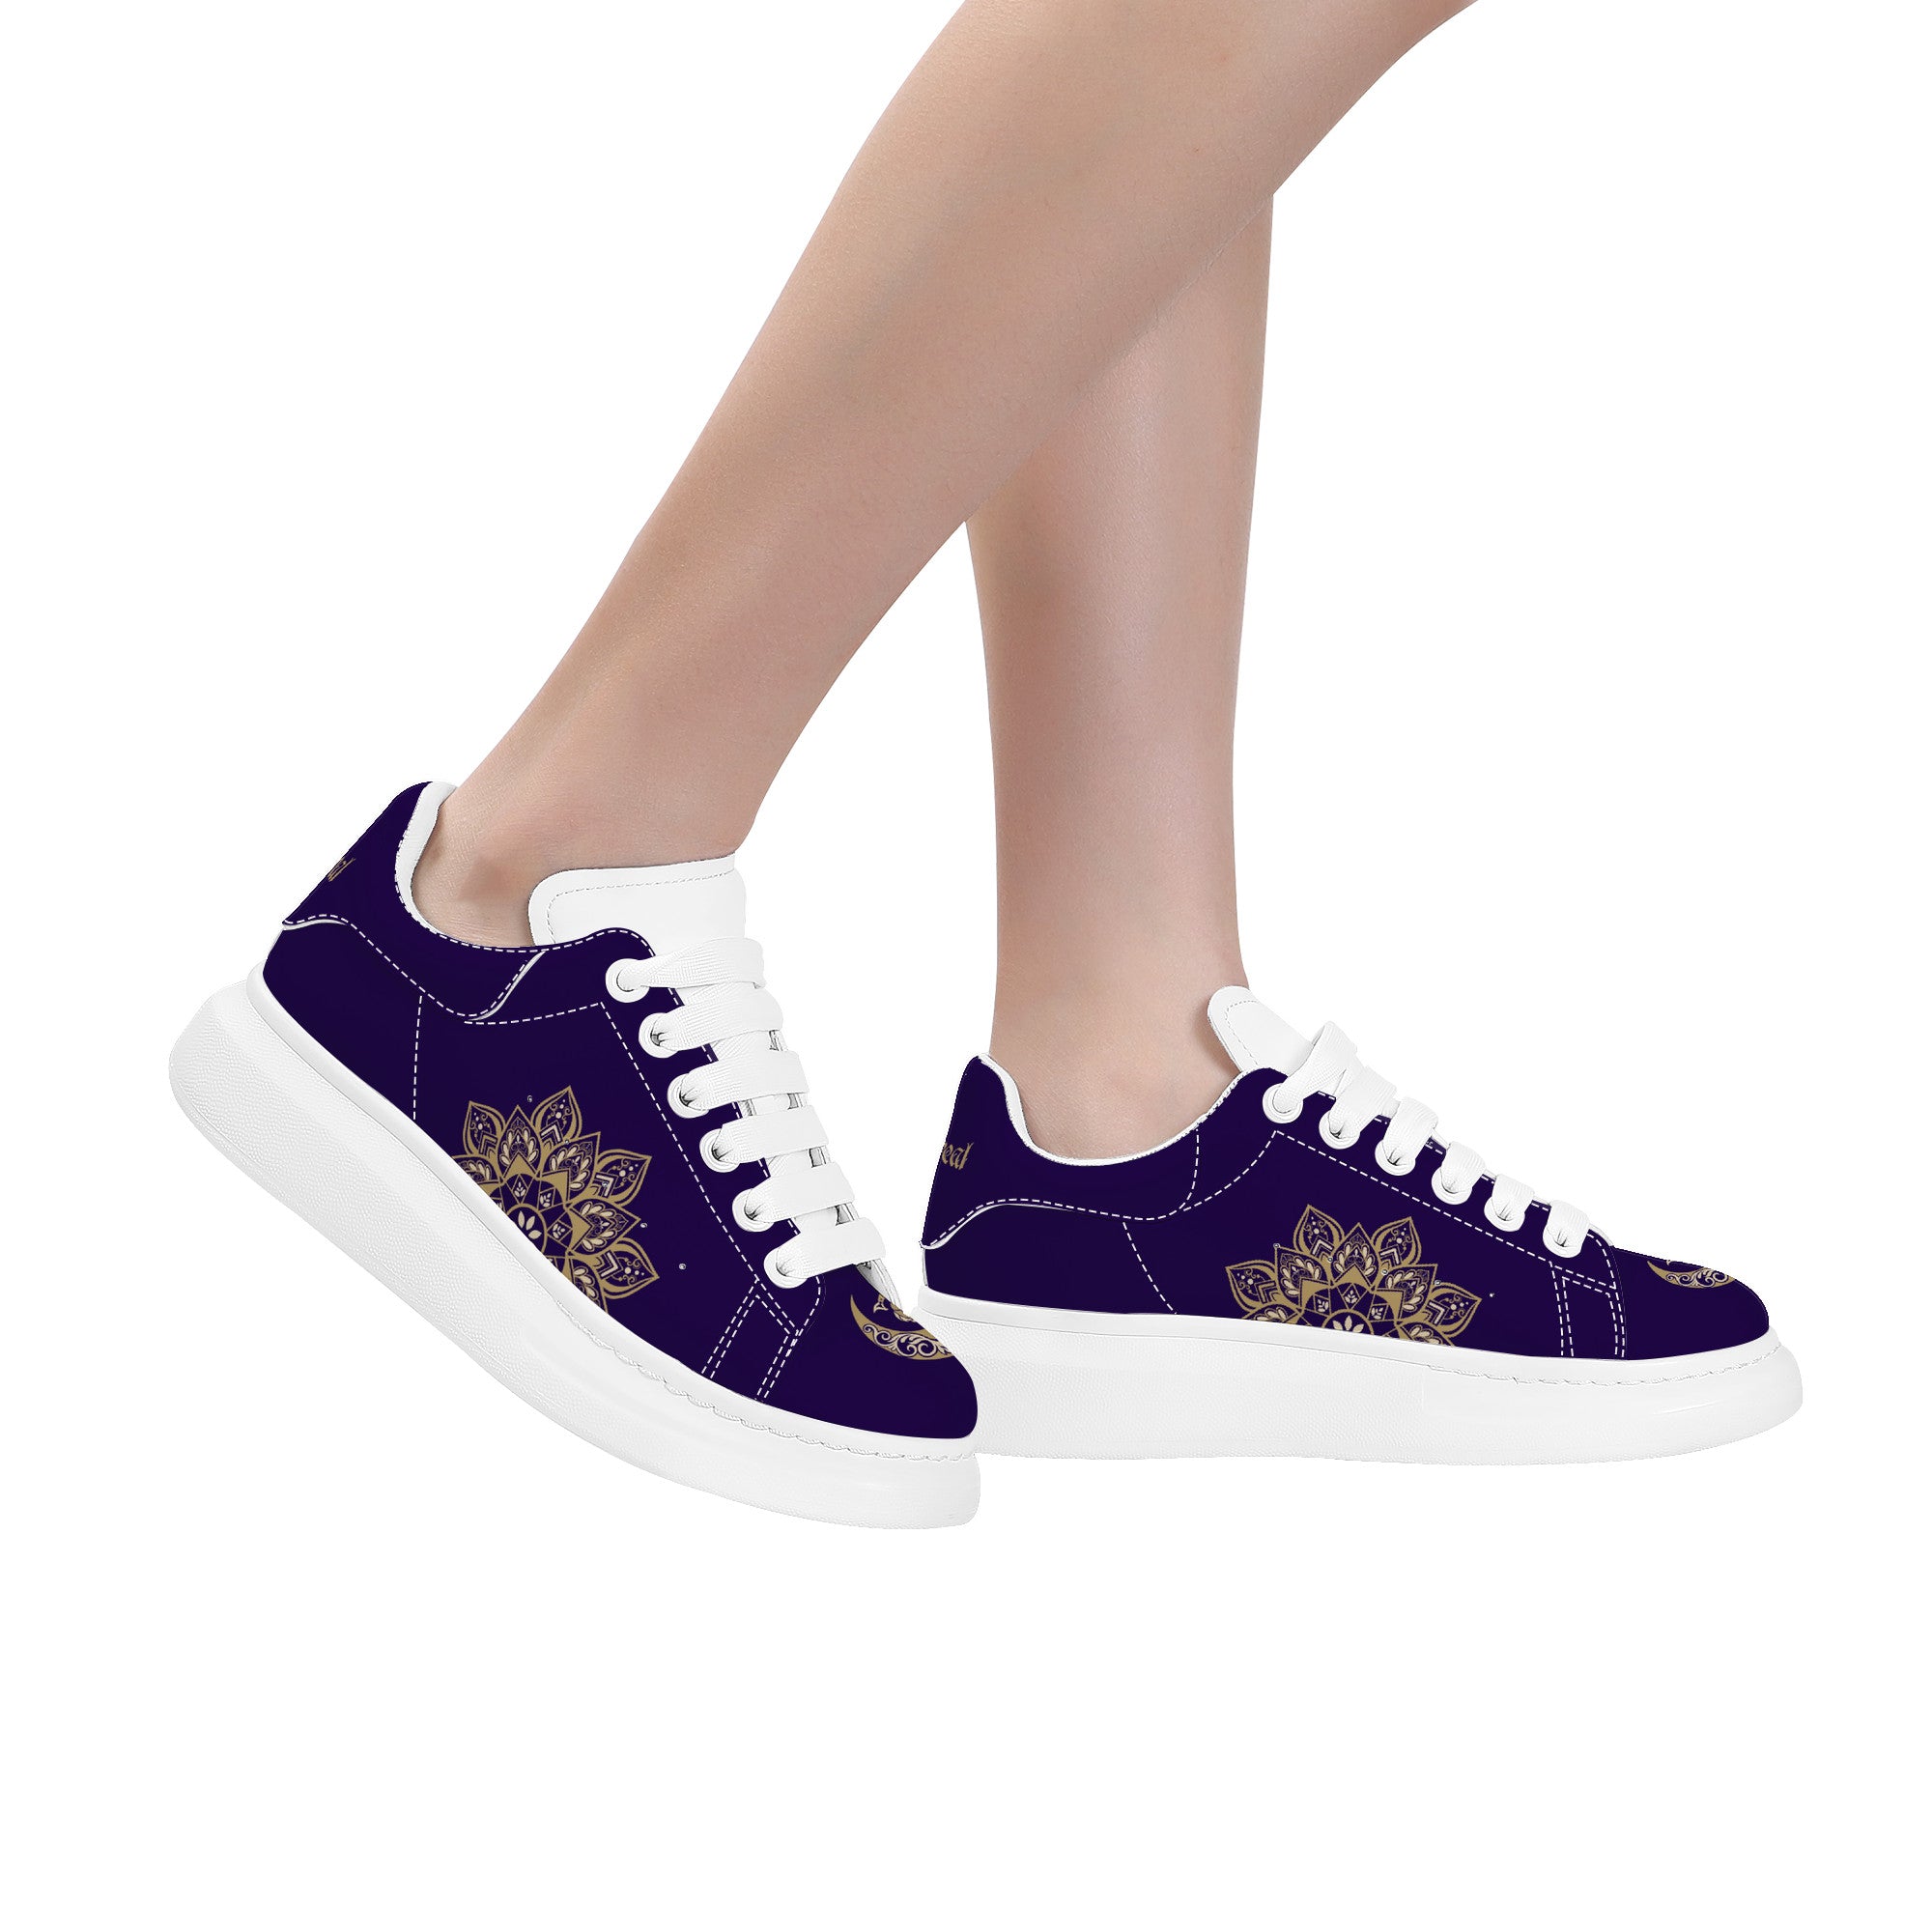 Llayda W Customized Low Top Shoes - White - Shoe Zero